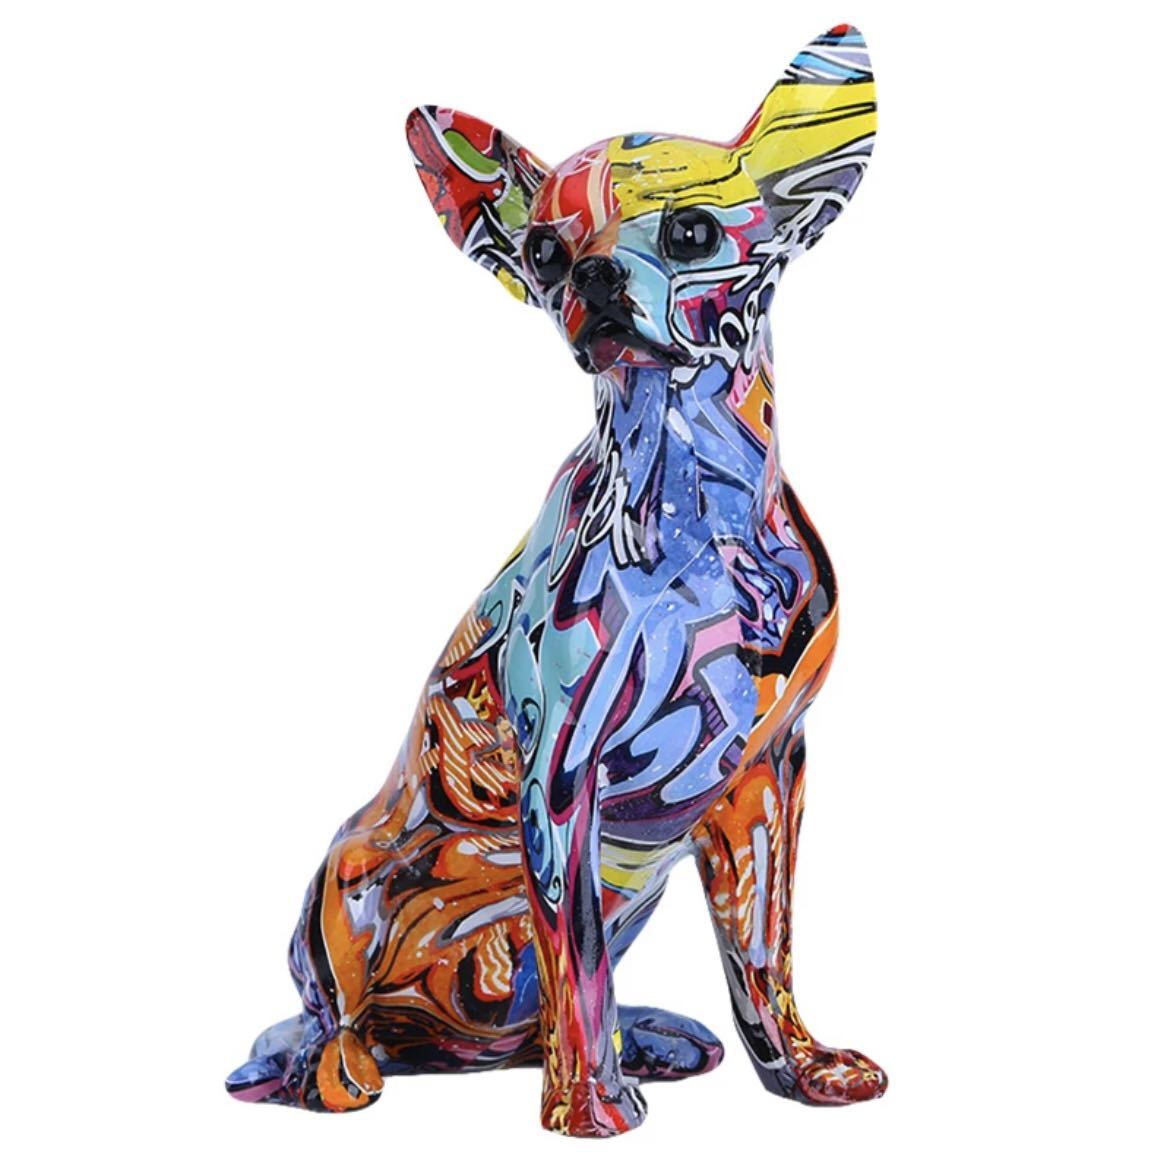 Bemalte Chihuahua-Graffiti-Figur, bunte Chihuahua-Farbe, Hund, Kunstharz, Innenobjekt, Accessoire, moderne Kunst, künstlerisch, abstrakt, 552, handgemachte Werke, Innere, verschiedene Waren, Ornament, Objekt